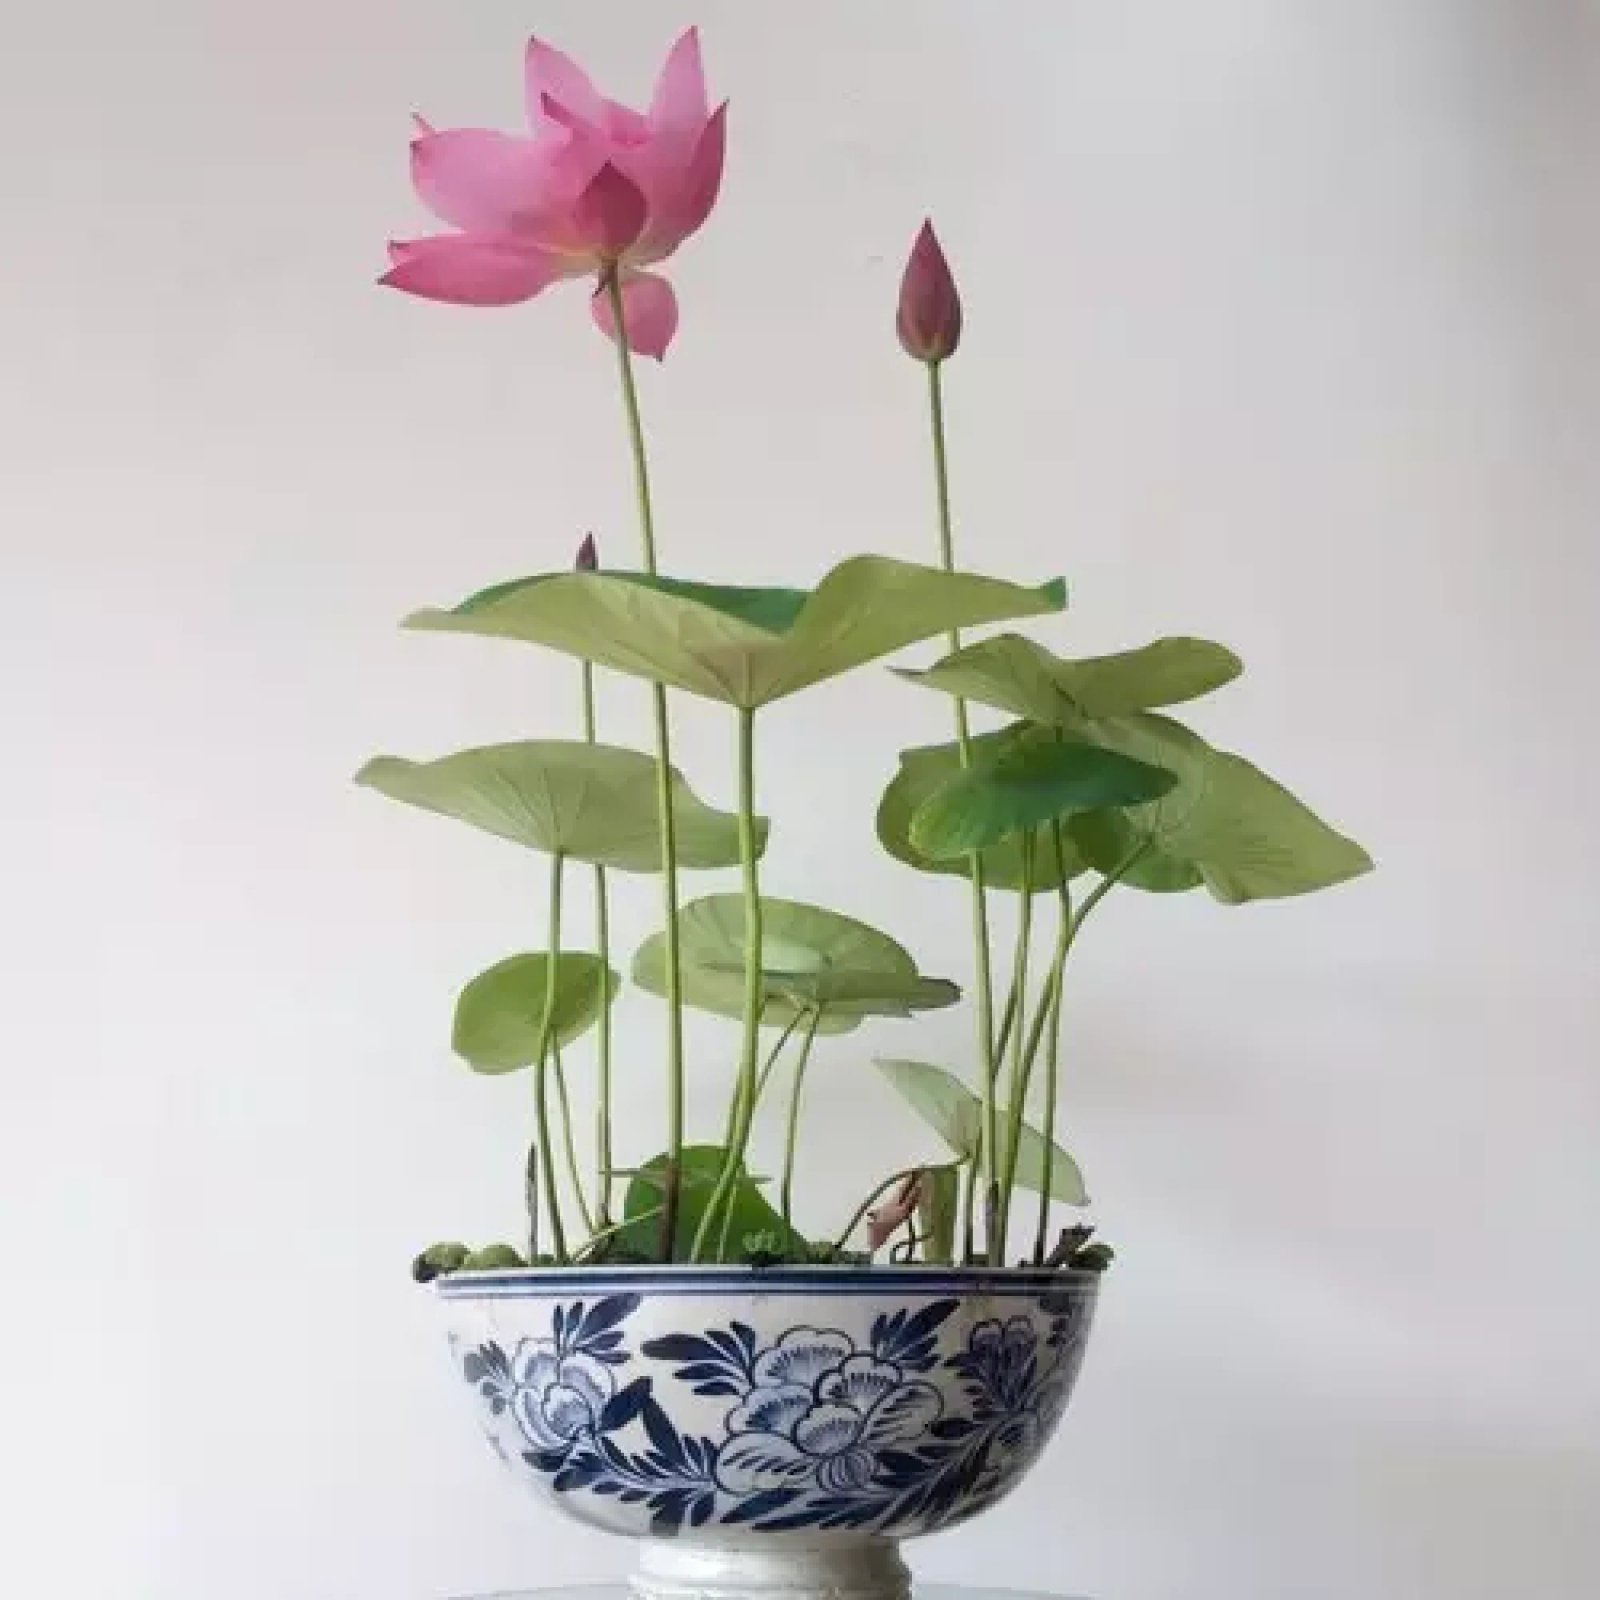 碗莲,想象在茶桌的瓷碗之中,开出莲花,其素雅之境,方寸之间尽显.